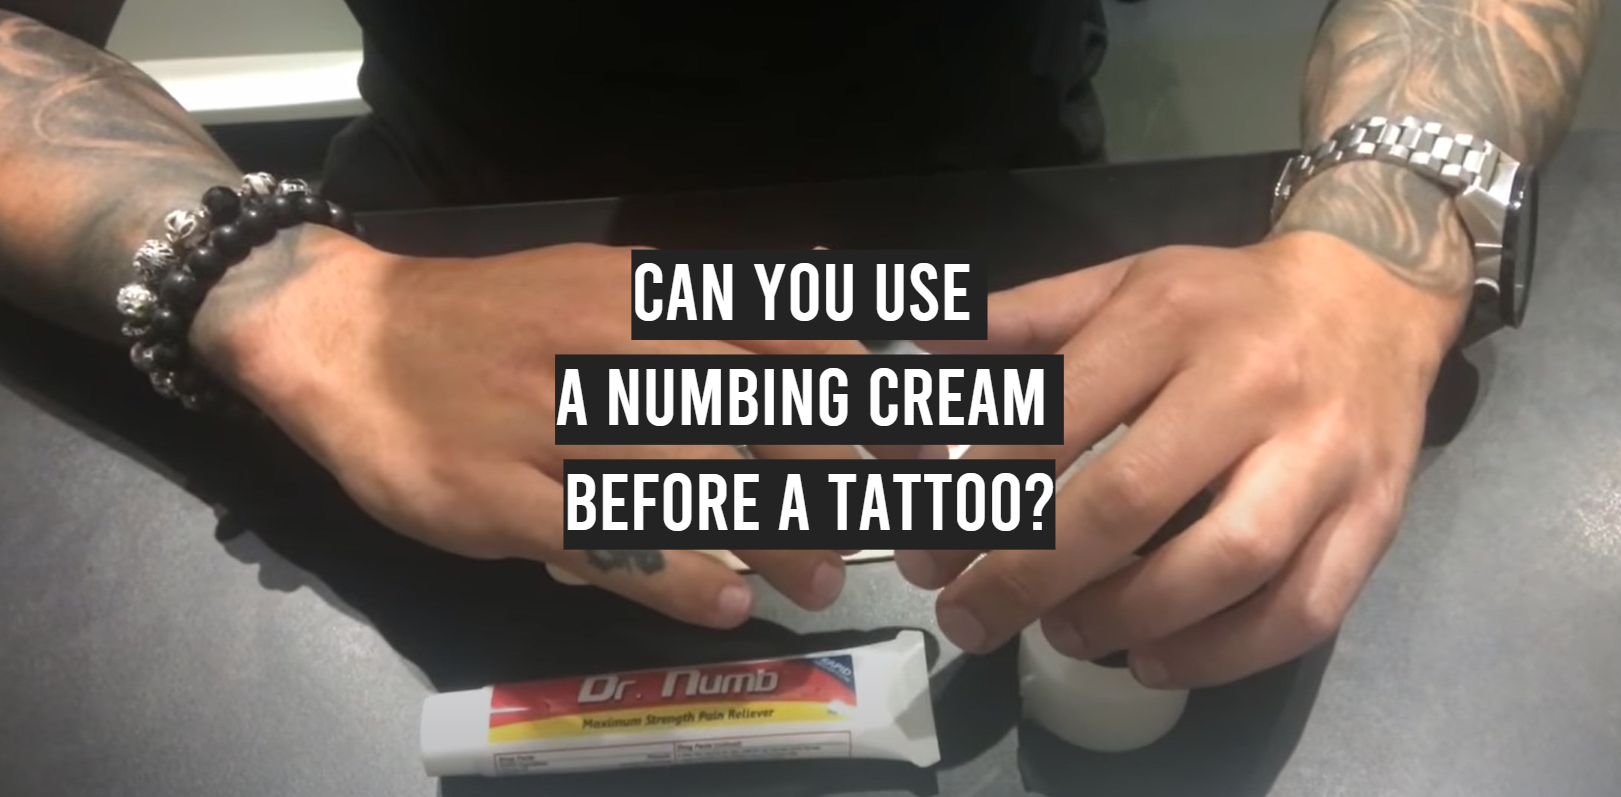 10 Best Tattoo Numbing Creams to Buy in 2022